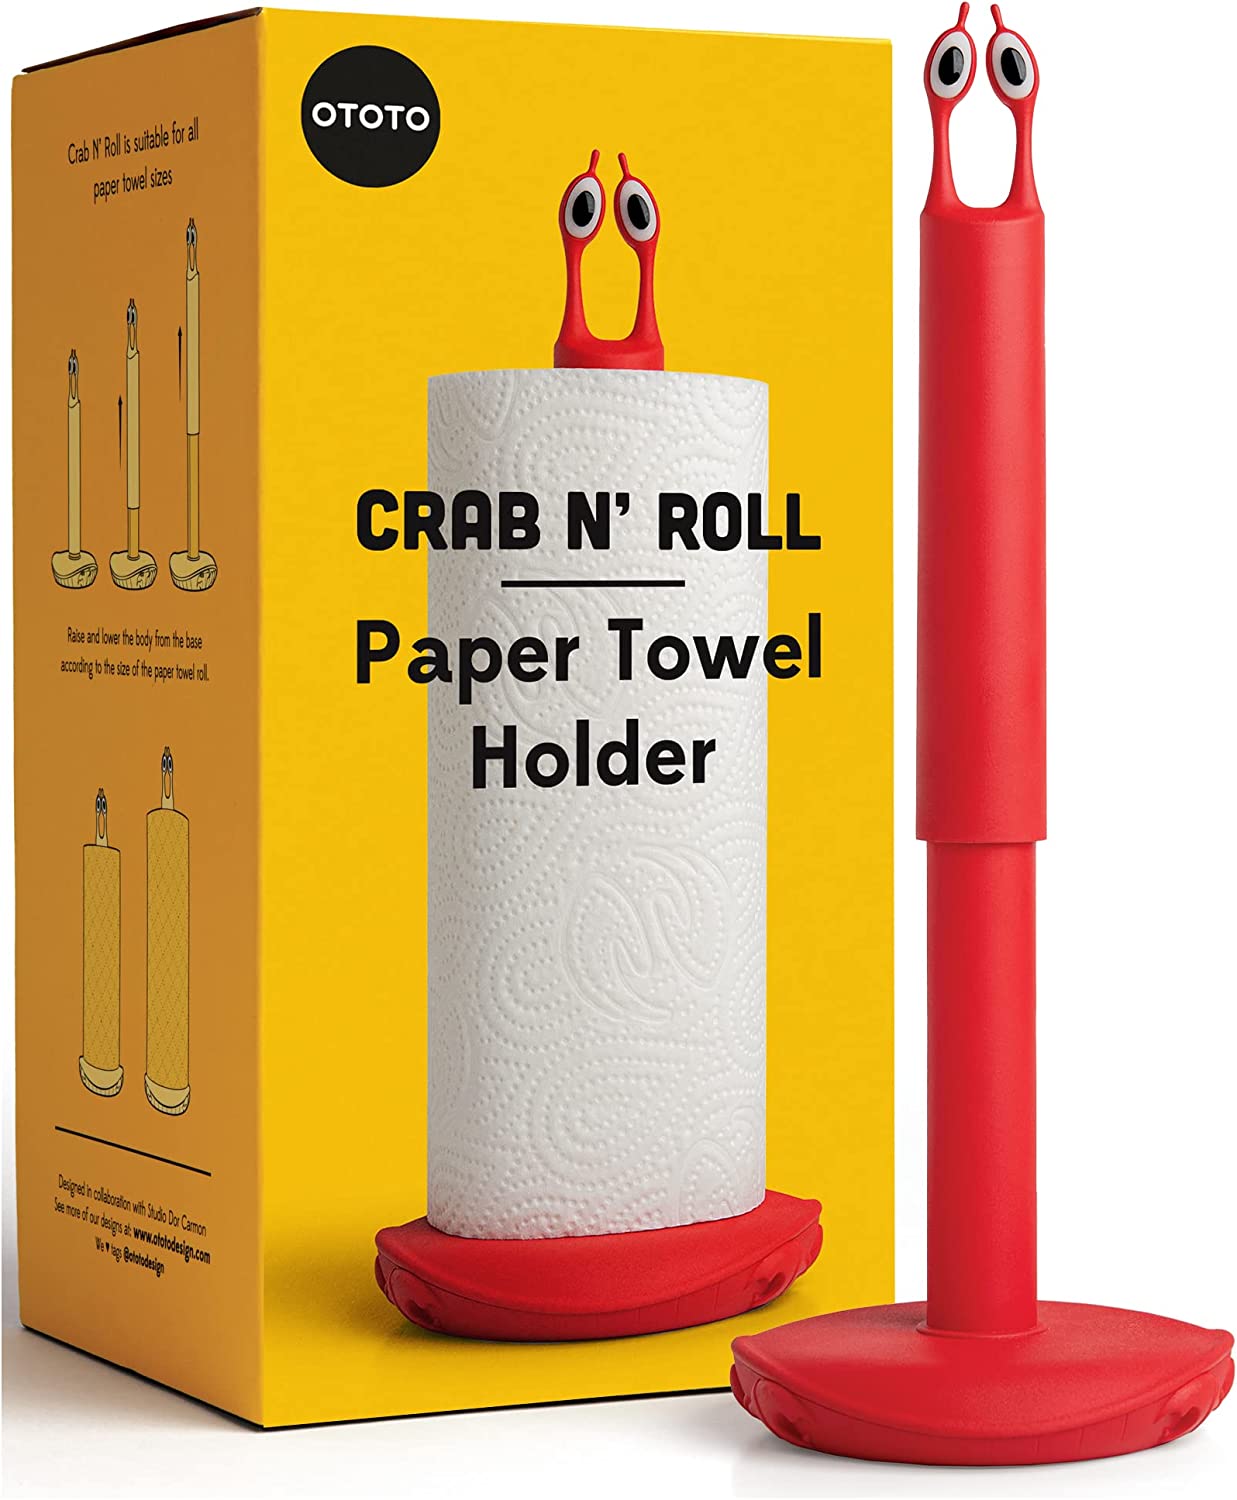 Crab-N-roll-Küchenrollenhalter-von-Ototo-berlideluxe-kuechentuchalter-rot-augen